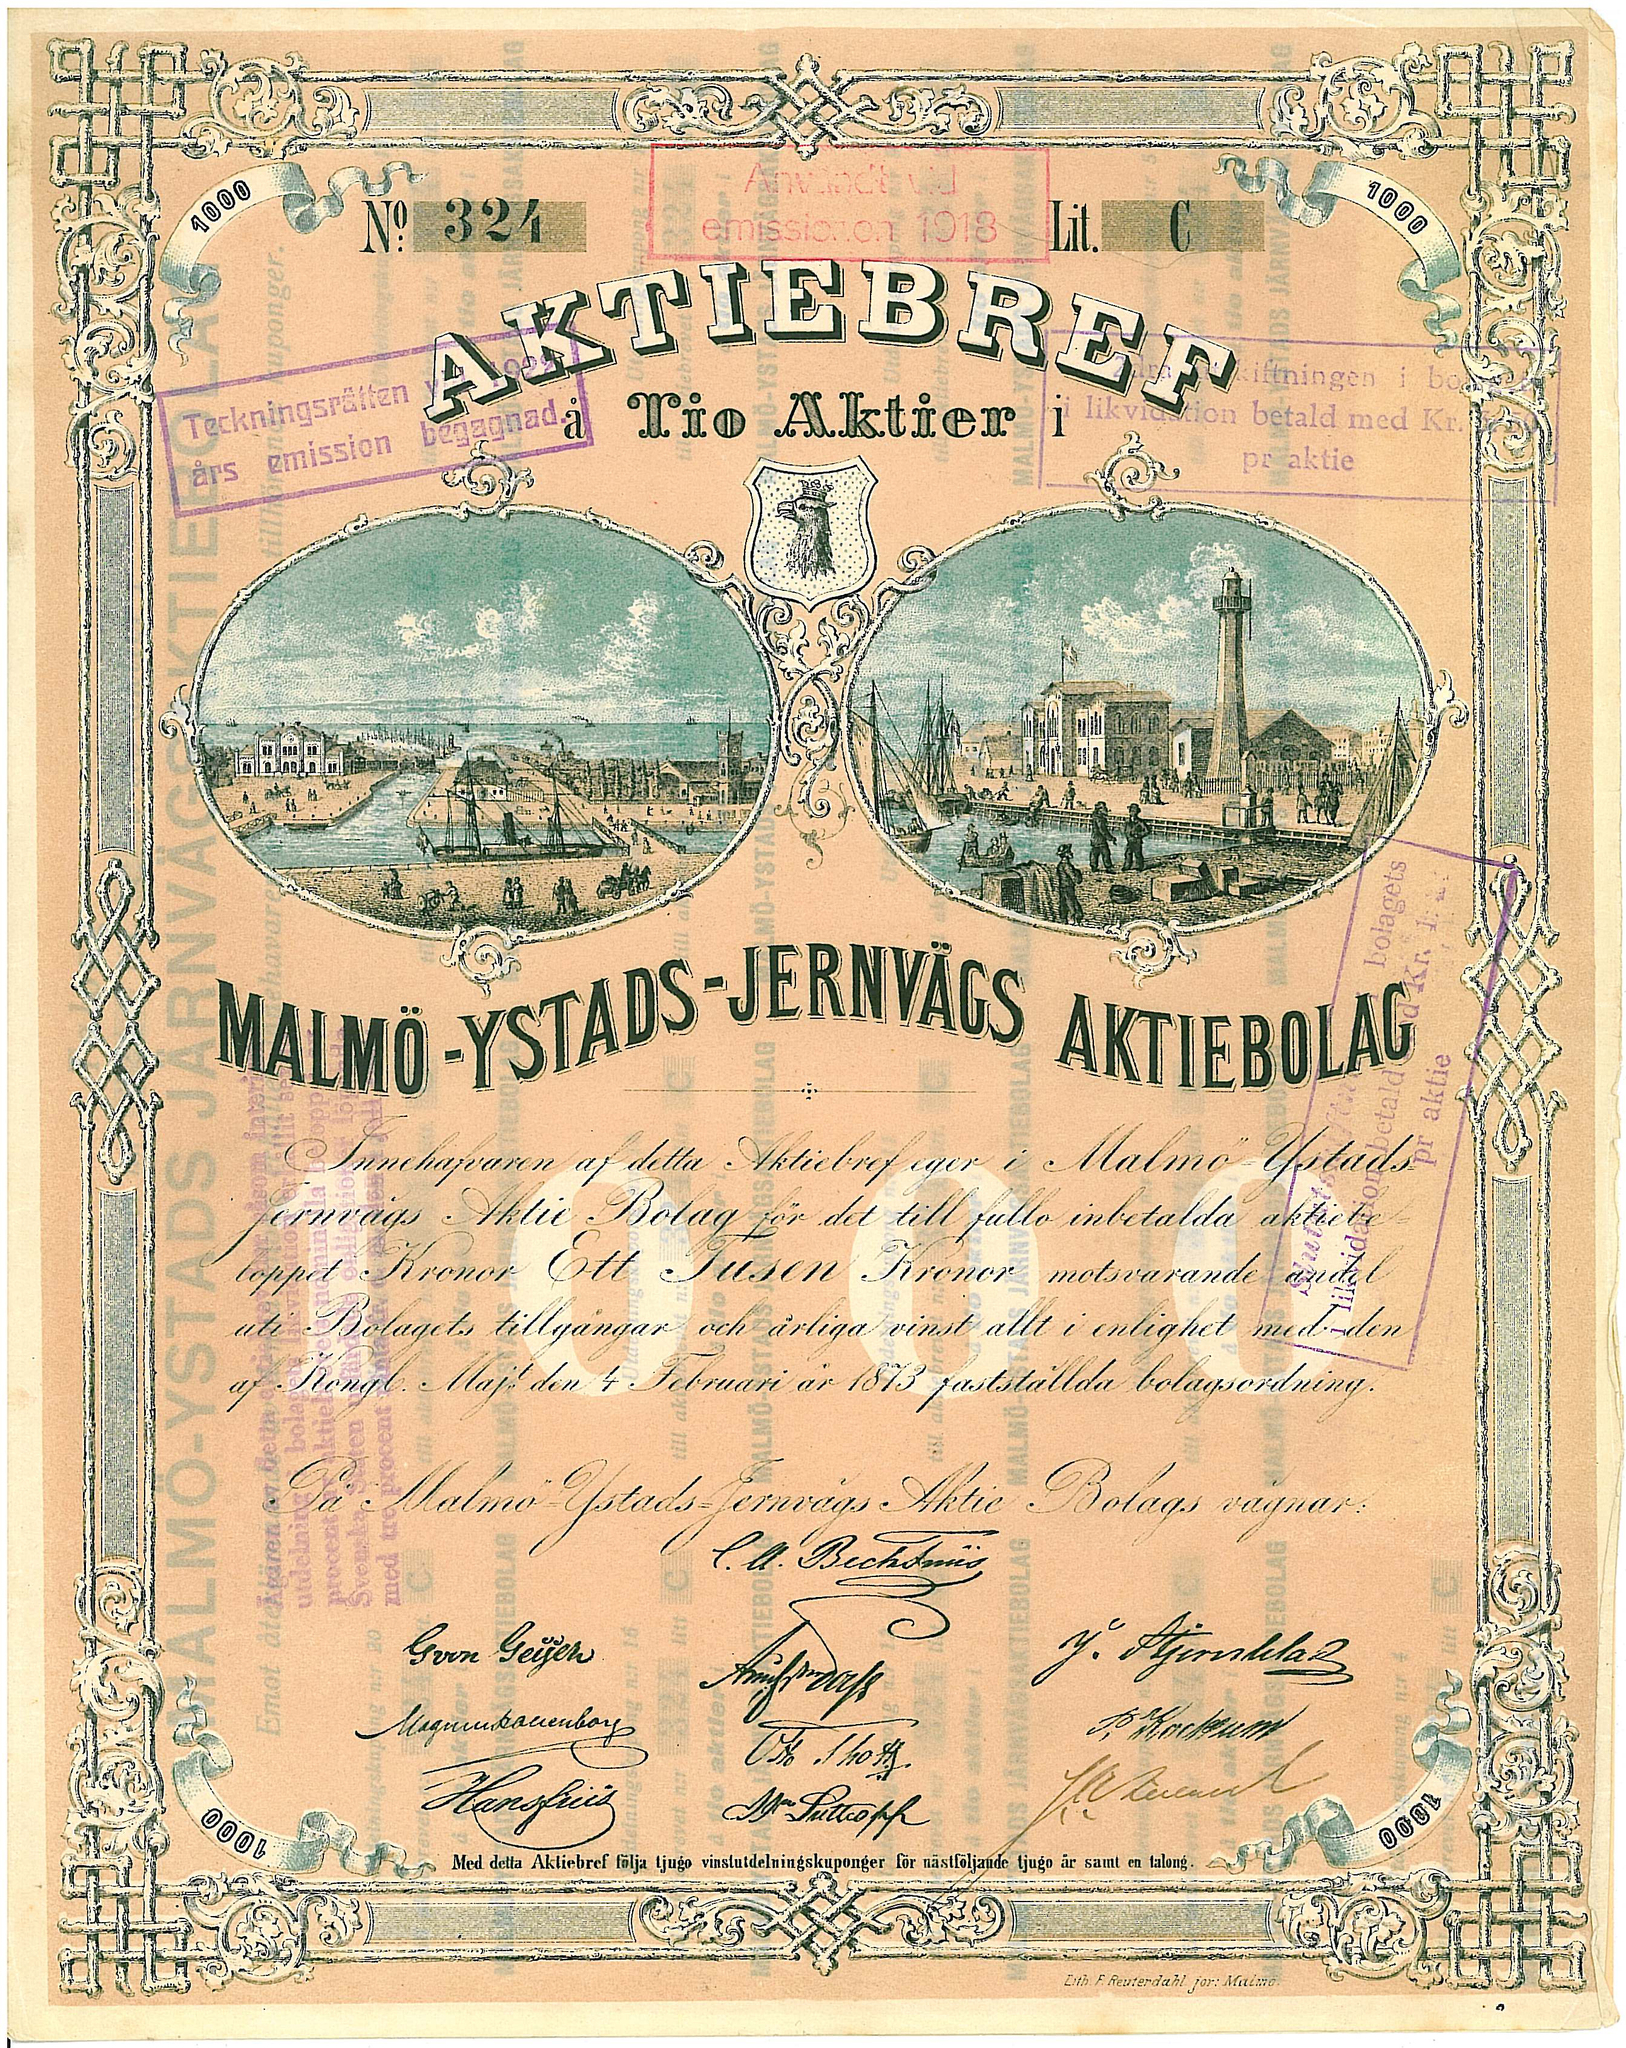 Malmö-Ystads Järnvägs AB, 1 000 kr, 1873,